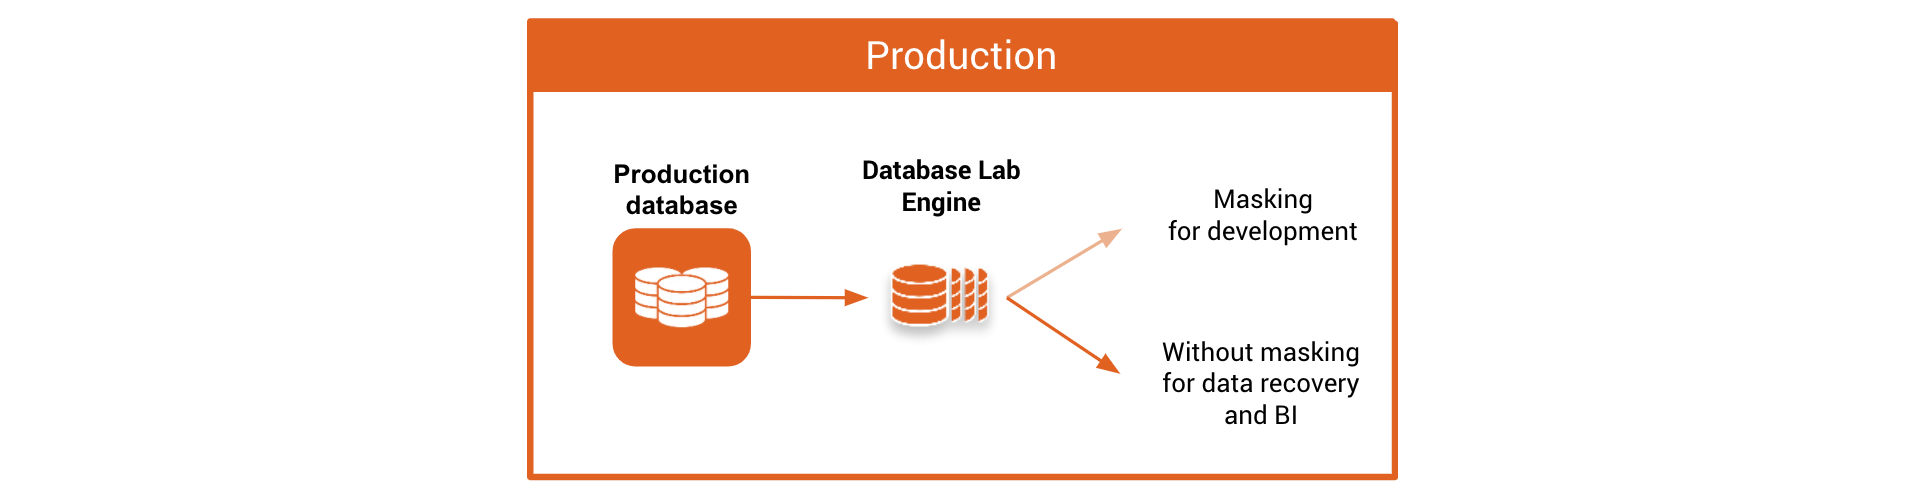 Post-masking / Option 2a. Database Lab Engine on production